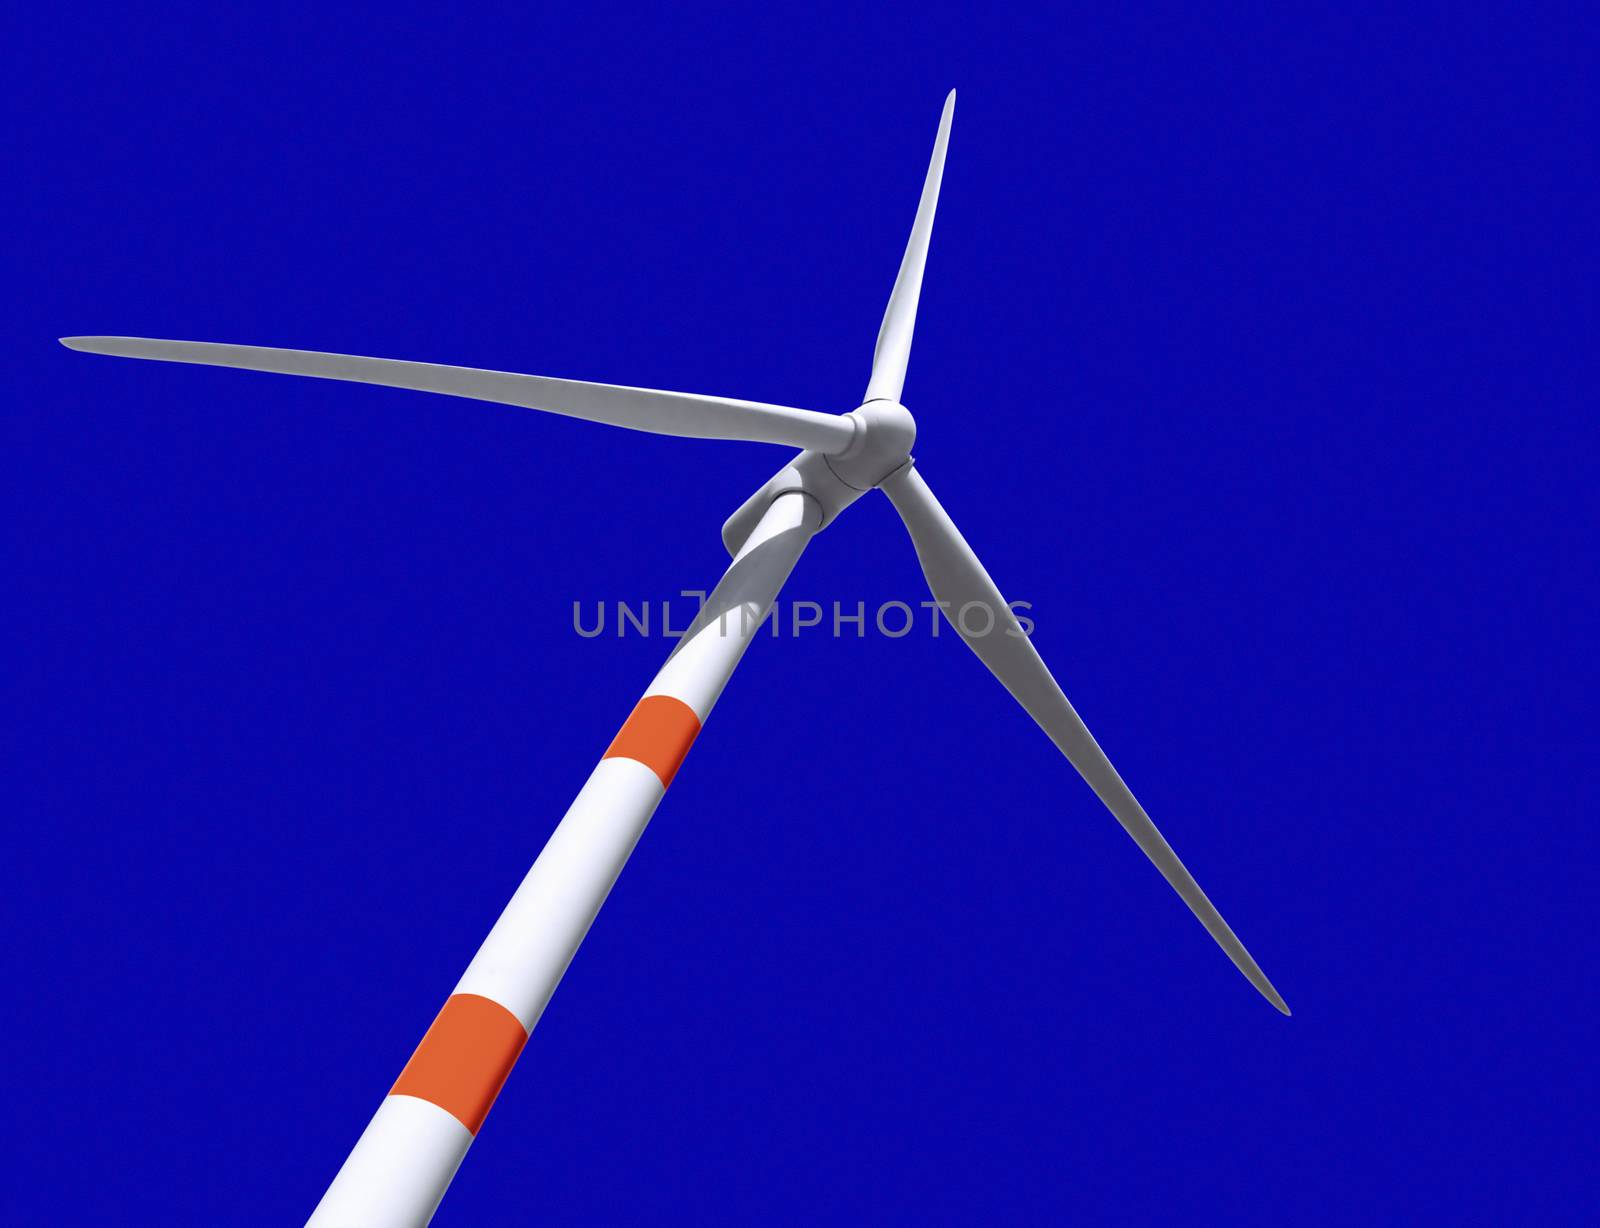 Wind turbine by Venakr